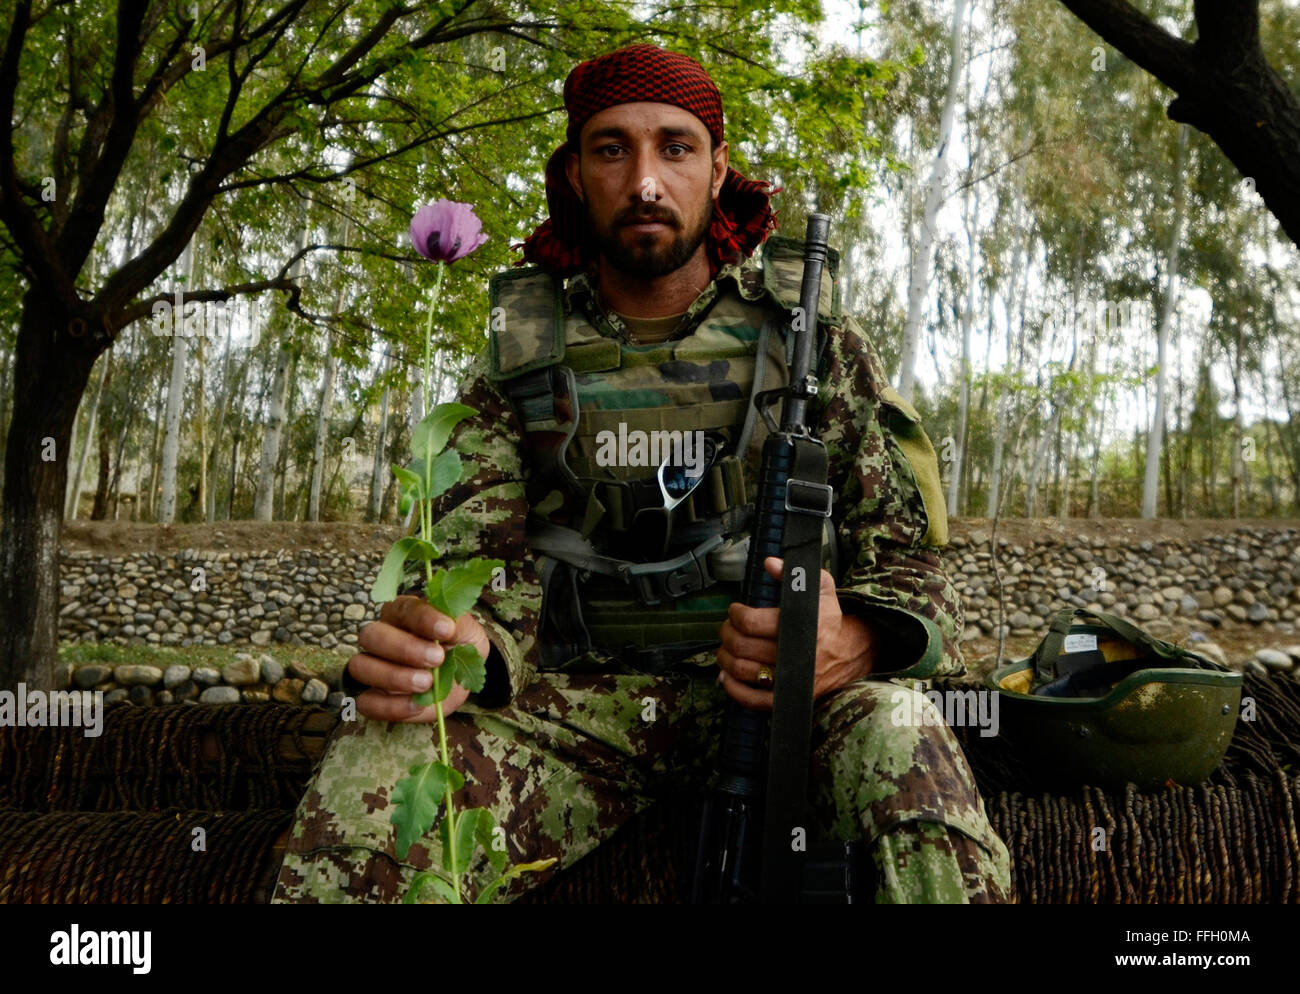 Un soldado del Ejército Nacional Afgano posa con una amapola cerca de la aldea de Karizonah, Afganistán. El cultivo de la amapola es una fuente importante de financiación para los grupos extremistas implicados en la insurgencia dirigida por los talibanes en Afganistán. Foto de stock